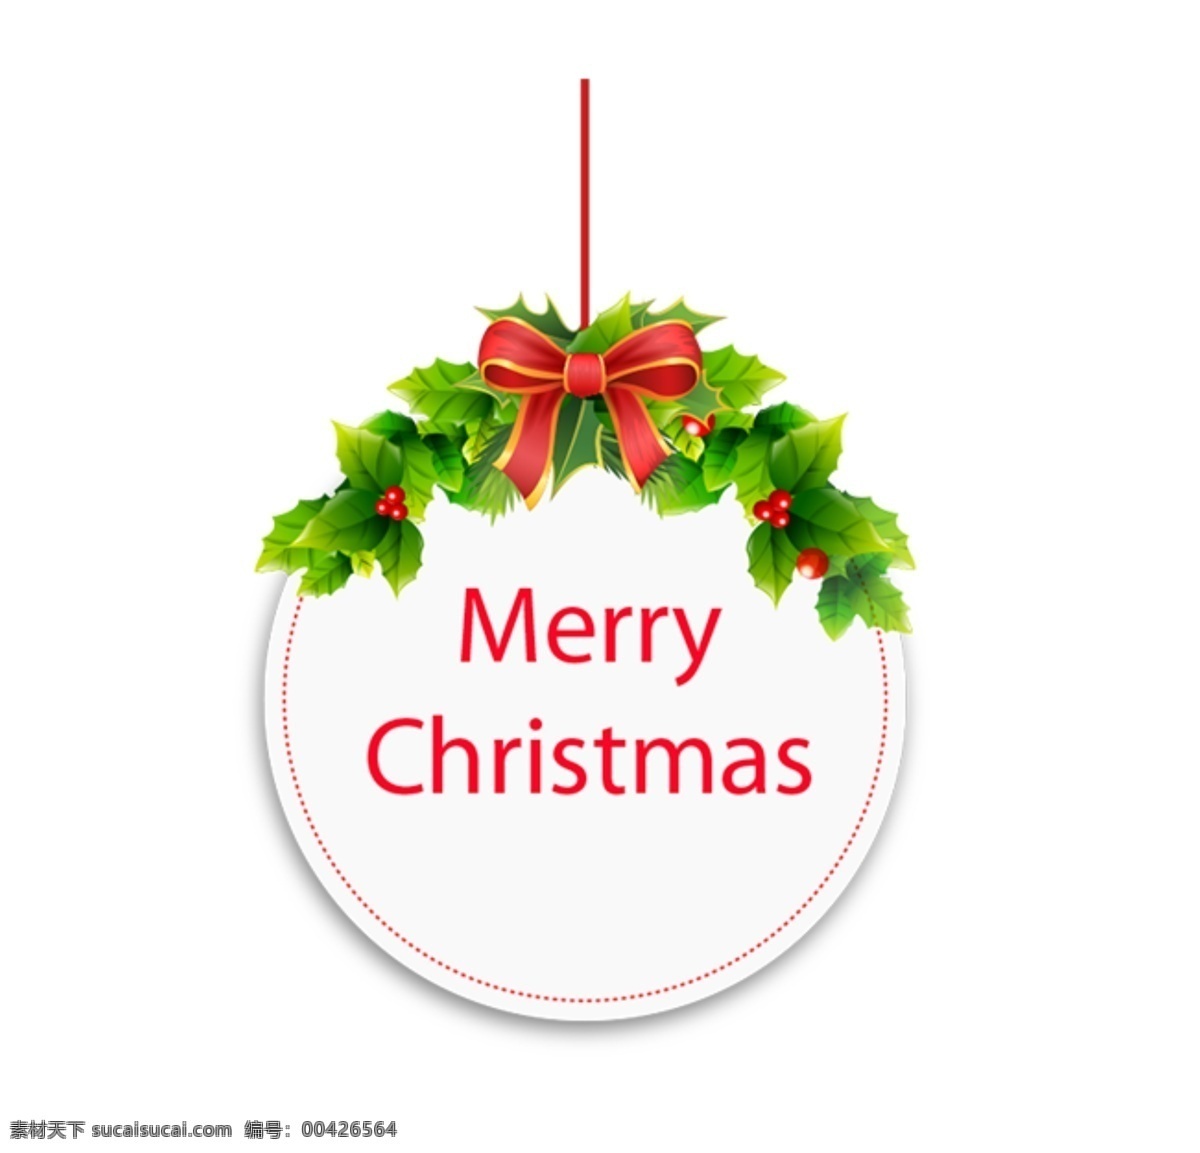 圣诞素材图片 圣诞素材 圣诞 圣诞节 圣诞拉人 圣诞树 圣诞袜 圣诞彩球 雪人 星星 彩球 外资 标签 玩偶 圣诞帽 铃铛 圣诞节礼盒 礼盒 圣诞节拐杖 圣诞糖果 糖果 素材图